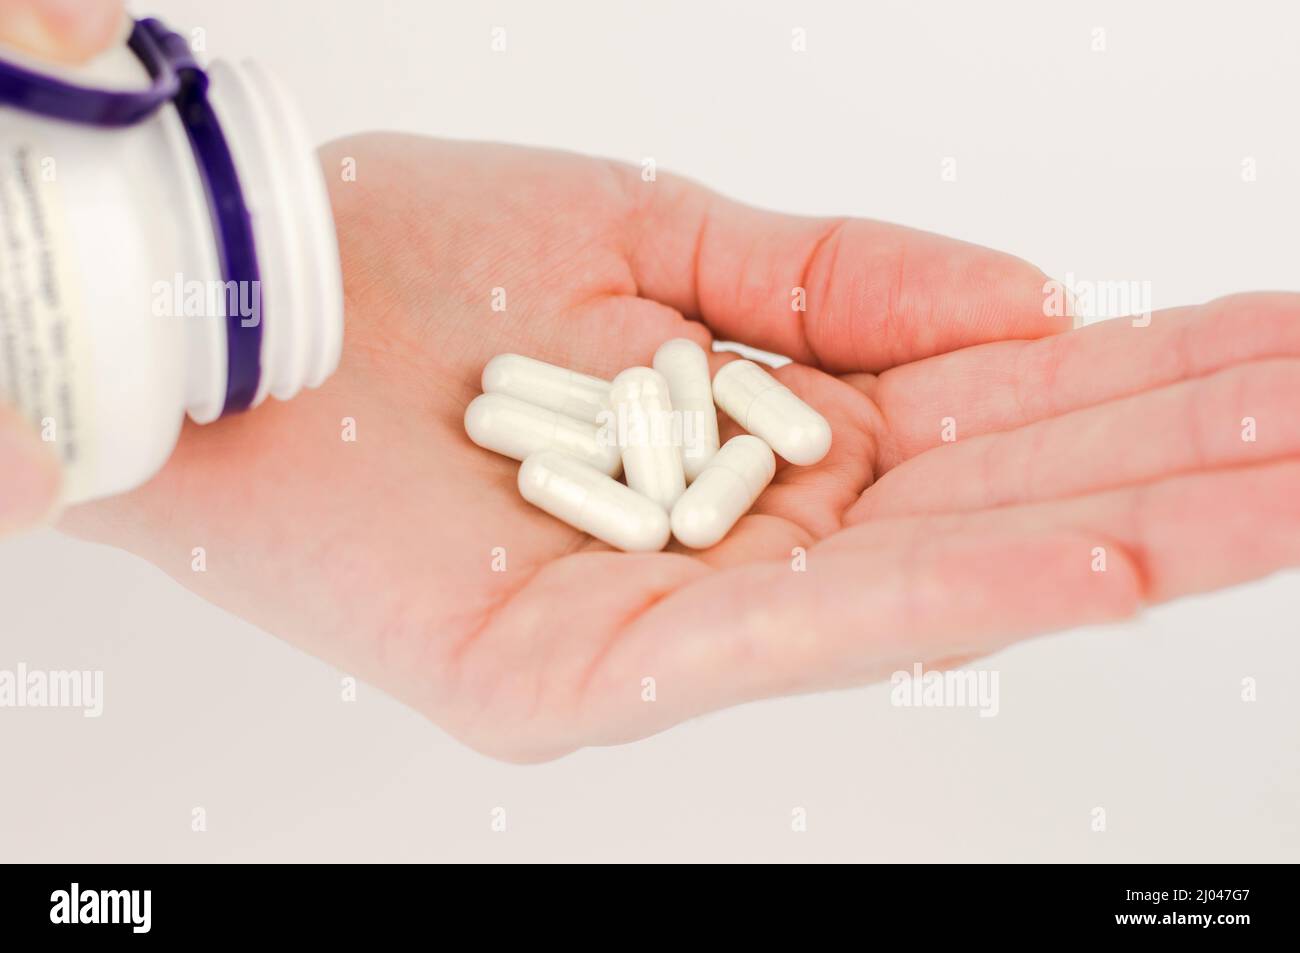 Weiße Kapsel Pillen in einer weiblichen Hand Nahaufnahme. Pillen für unerwünschte Schwangerschaft, orale Empfängnisverhütung. Stockfoto